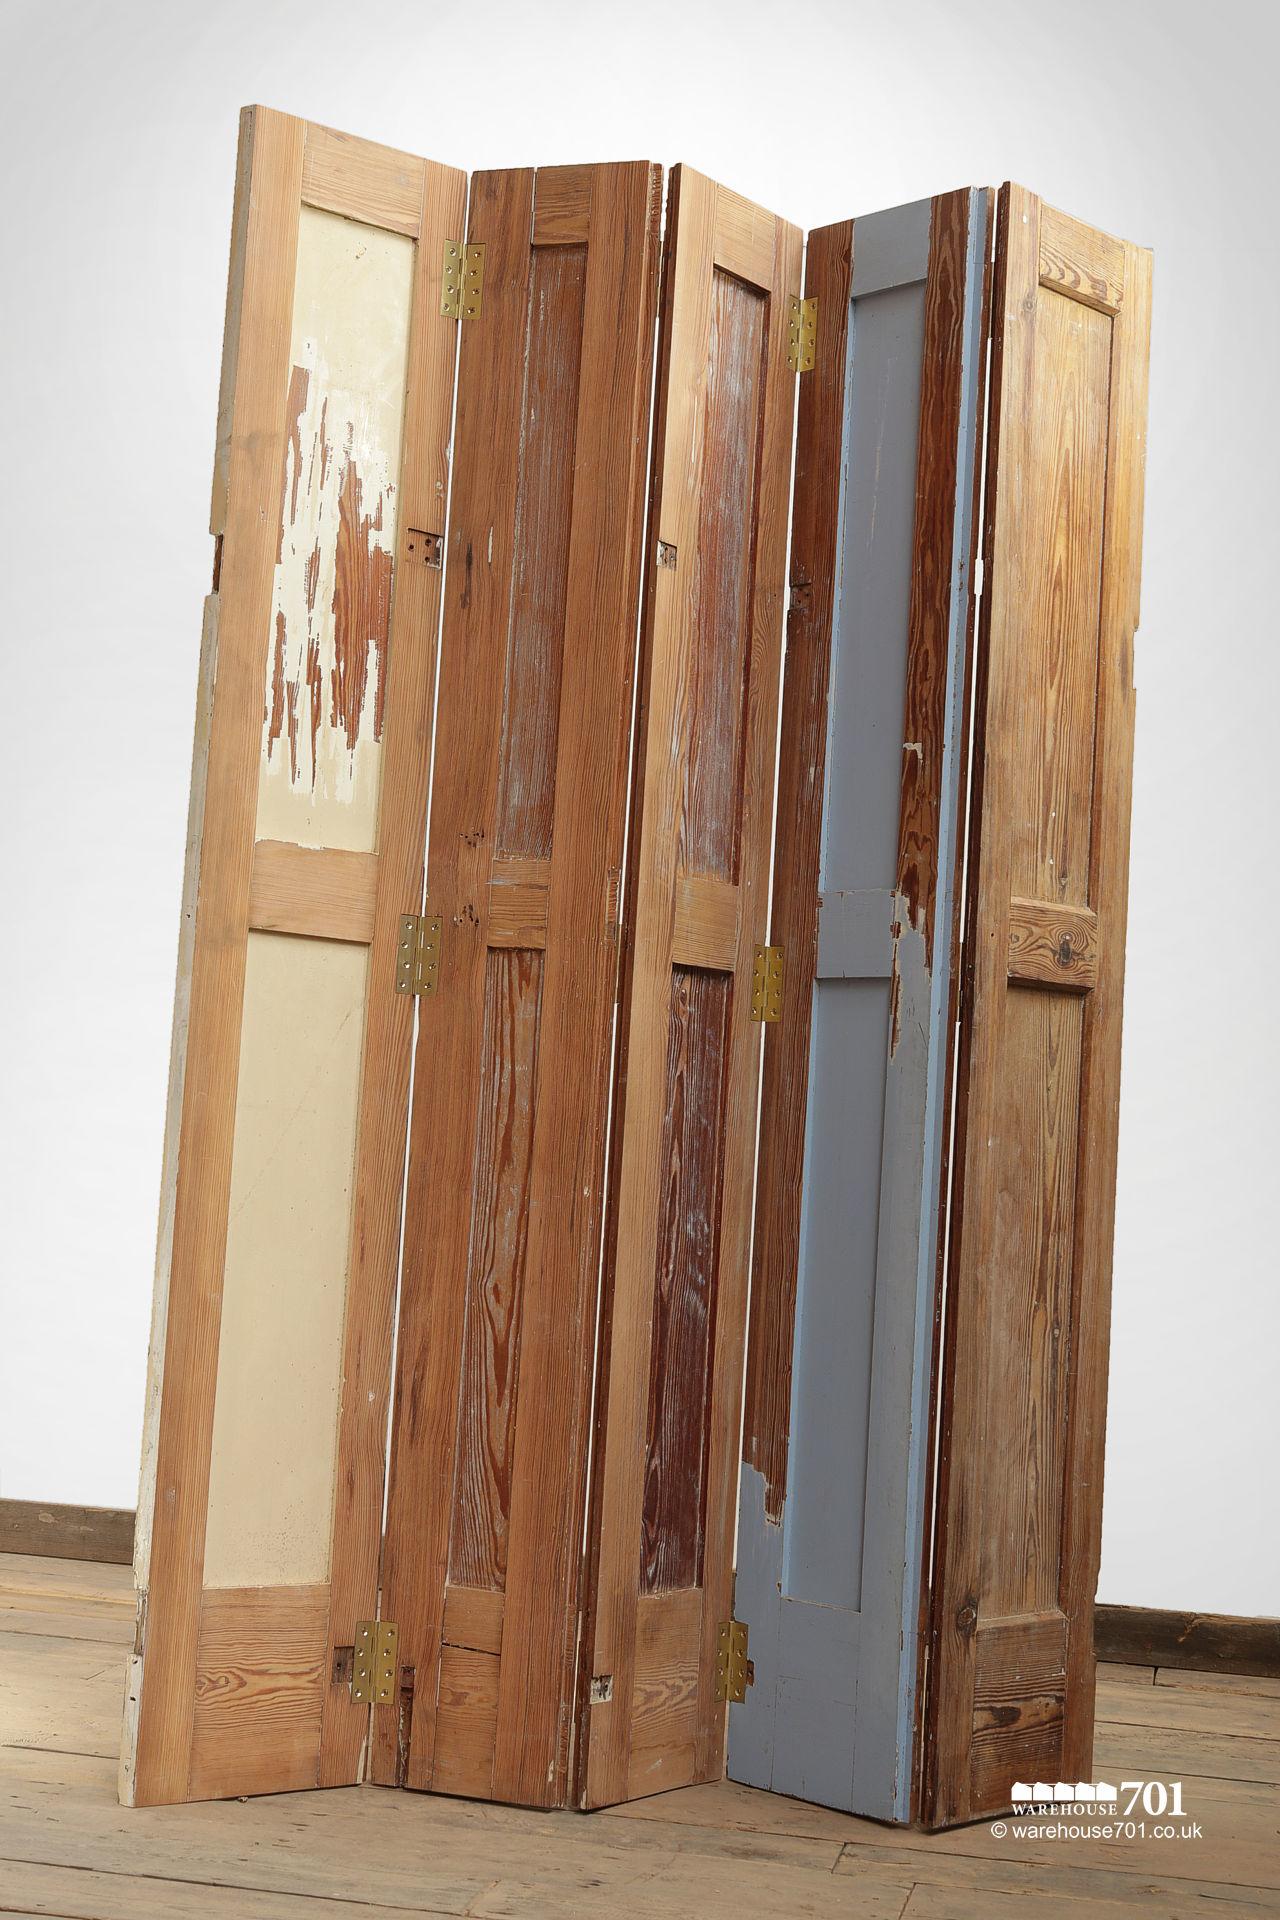 Vintage Style Five-Leaf Wood Shutter Room Divider #7